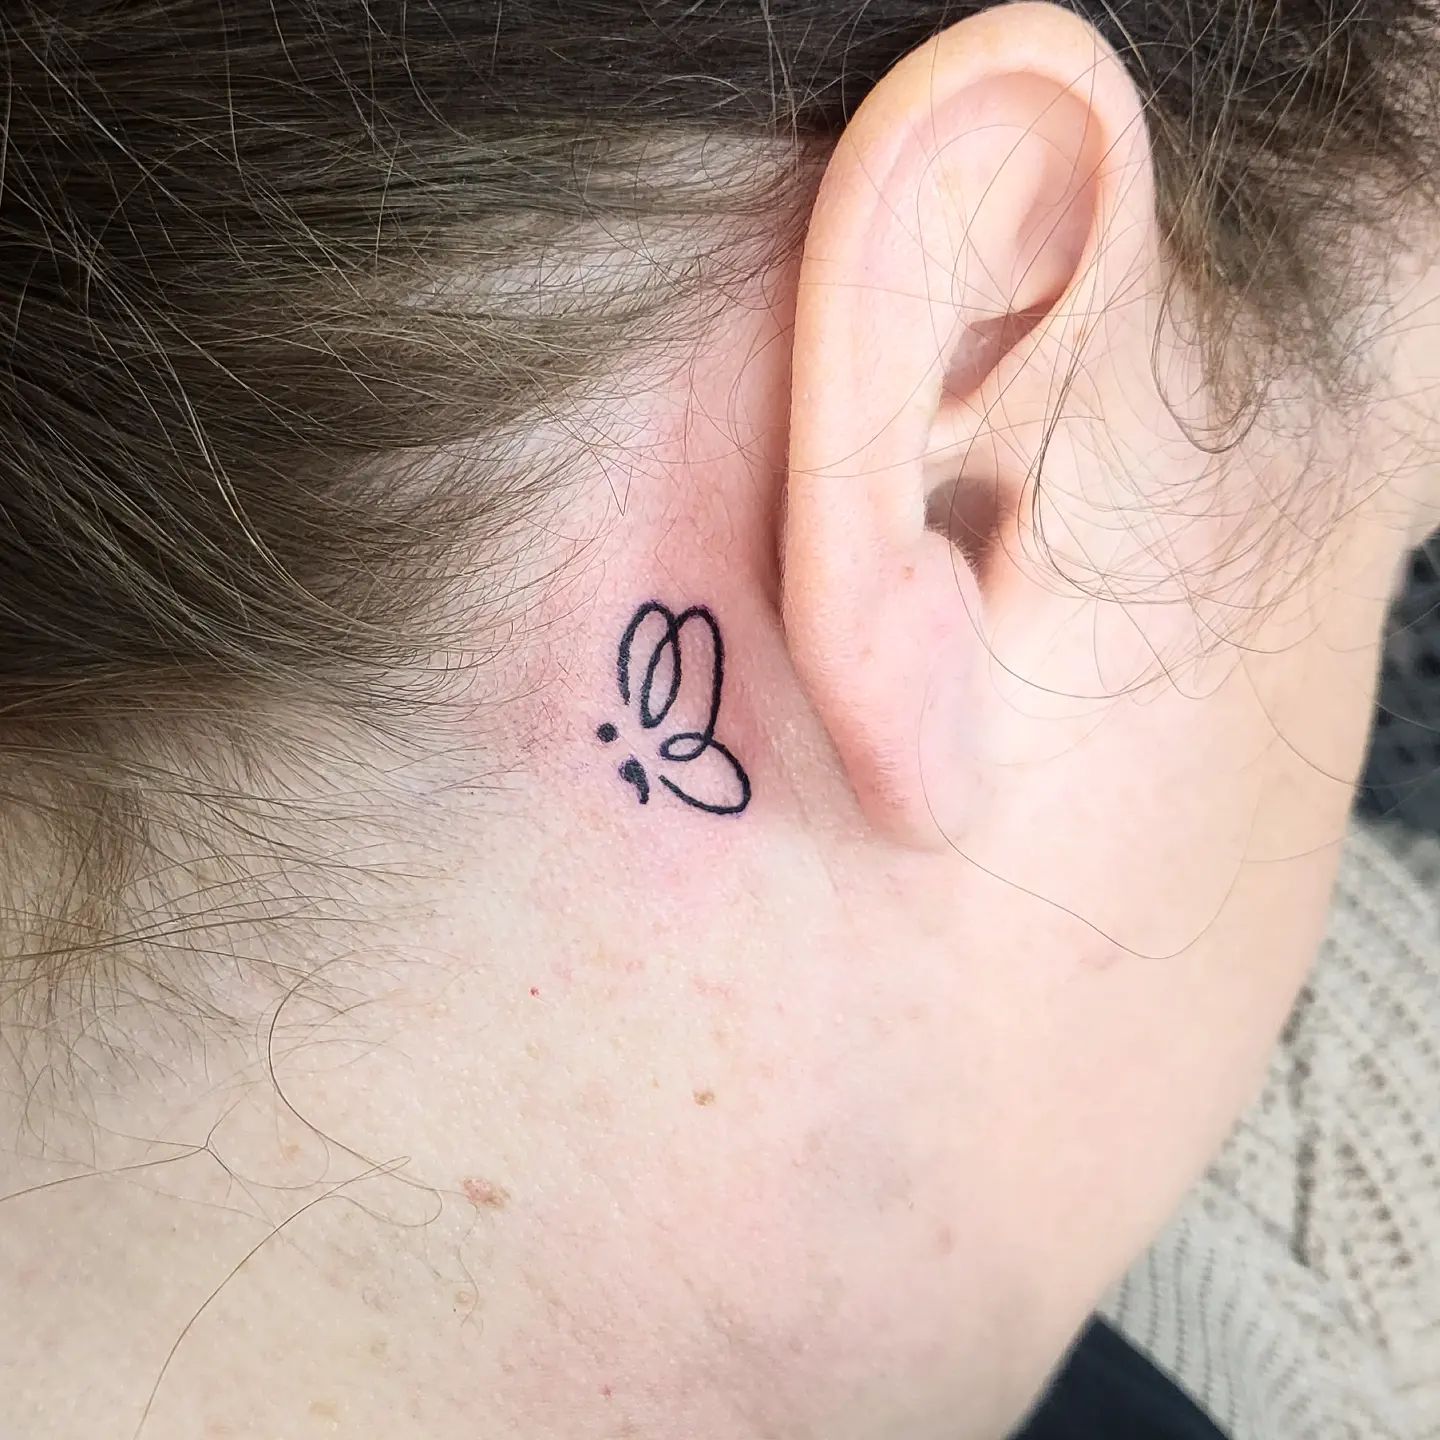 Tatuaje de punto y coma sobre la oreja.